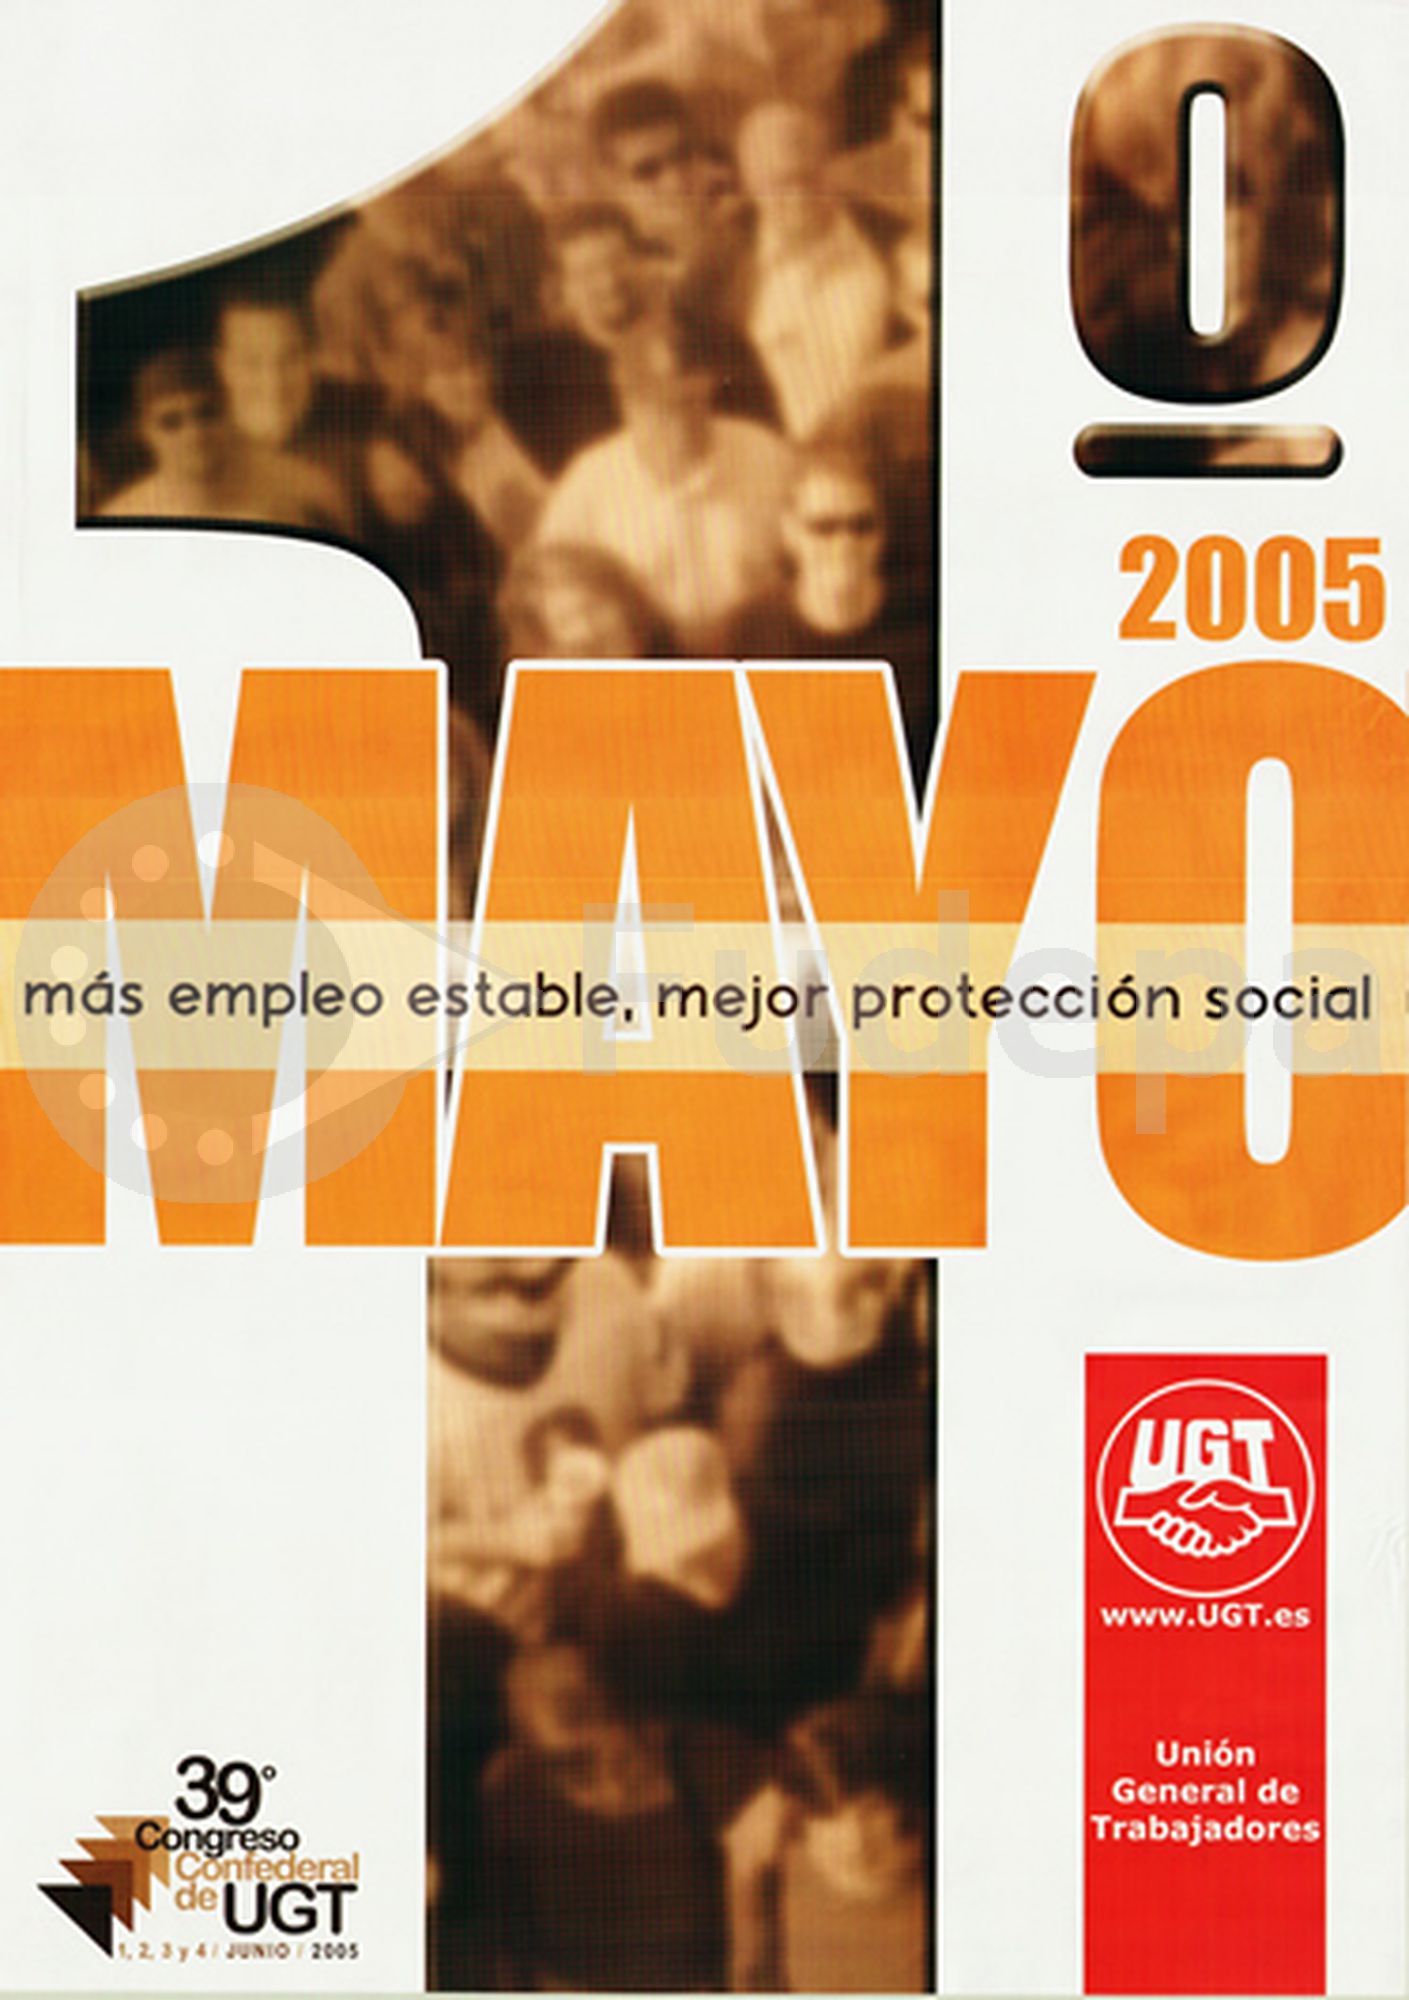 2005: Más empleo estable, mejor protección social